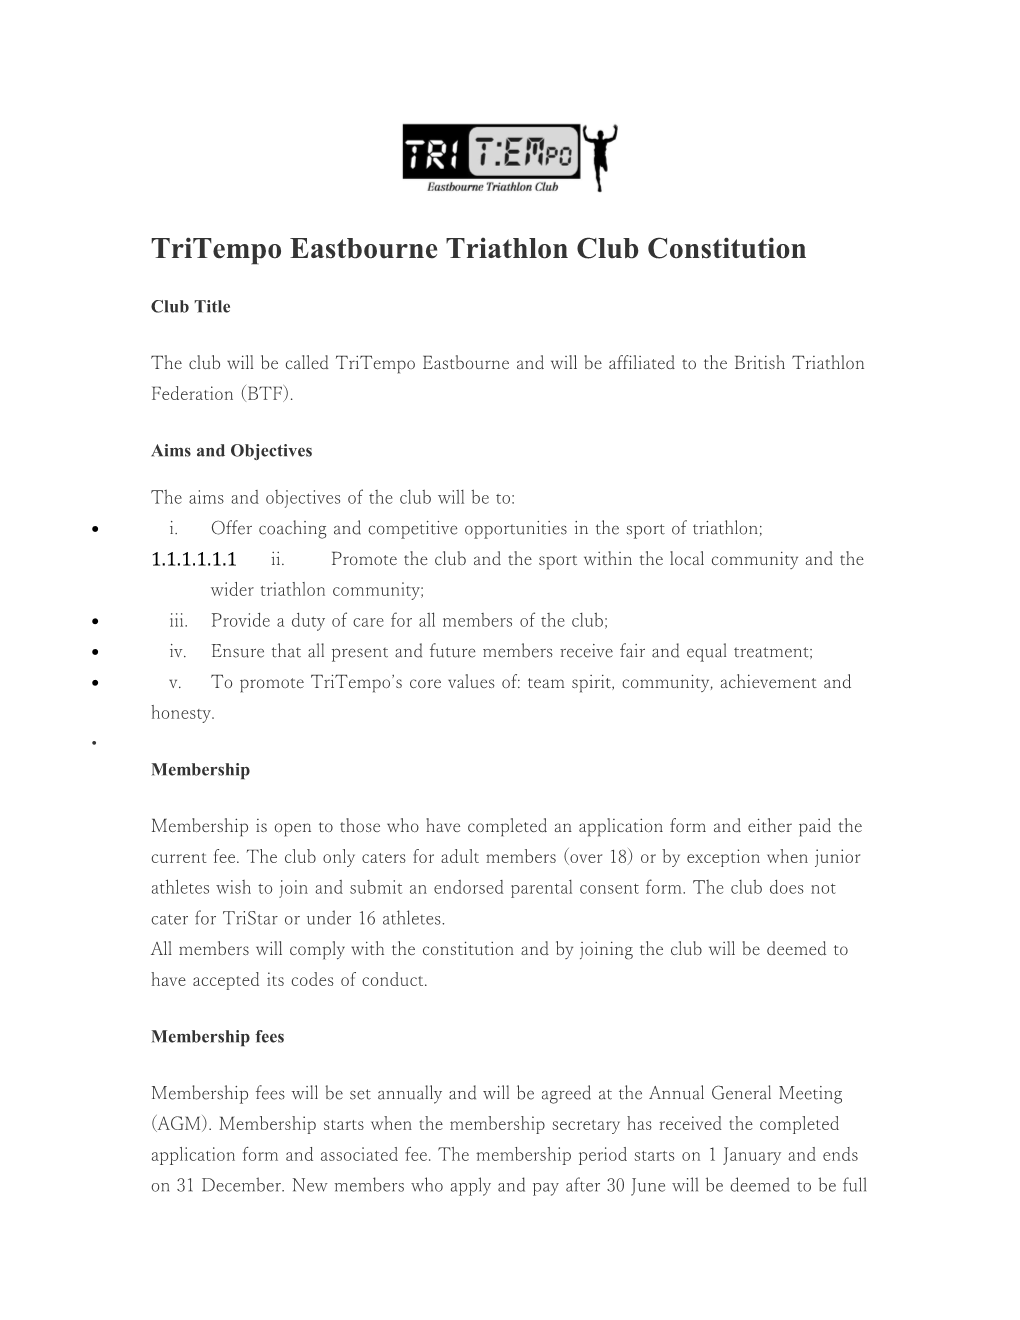 Tritempo Eastbourne Triathlon Club Constitution